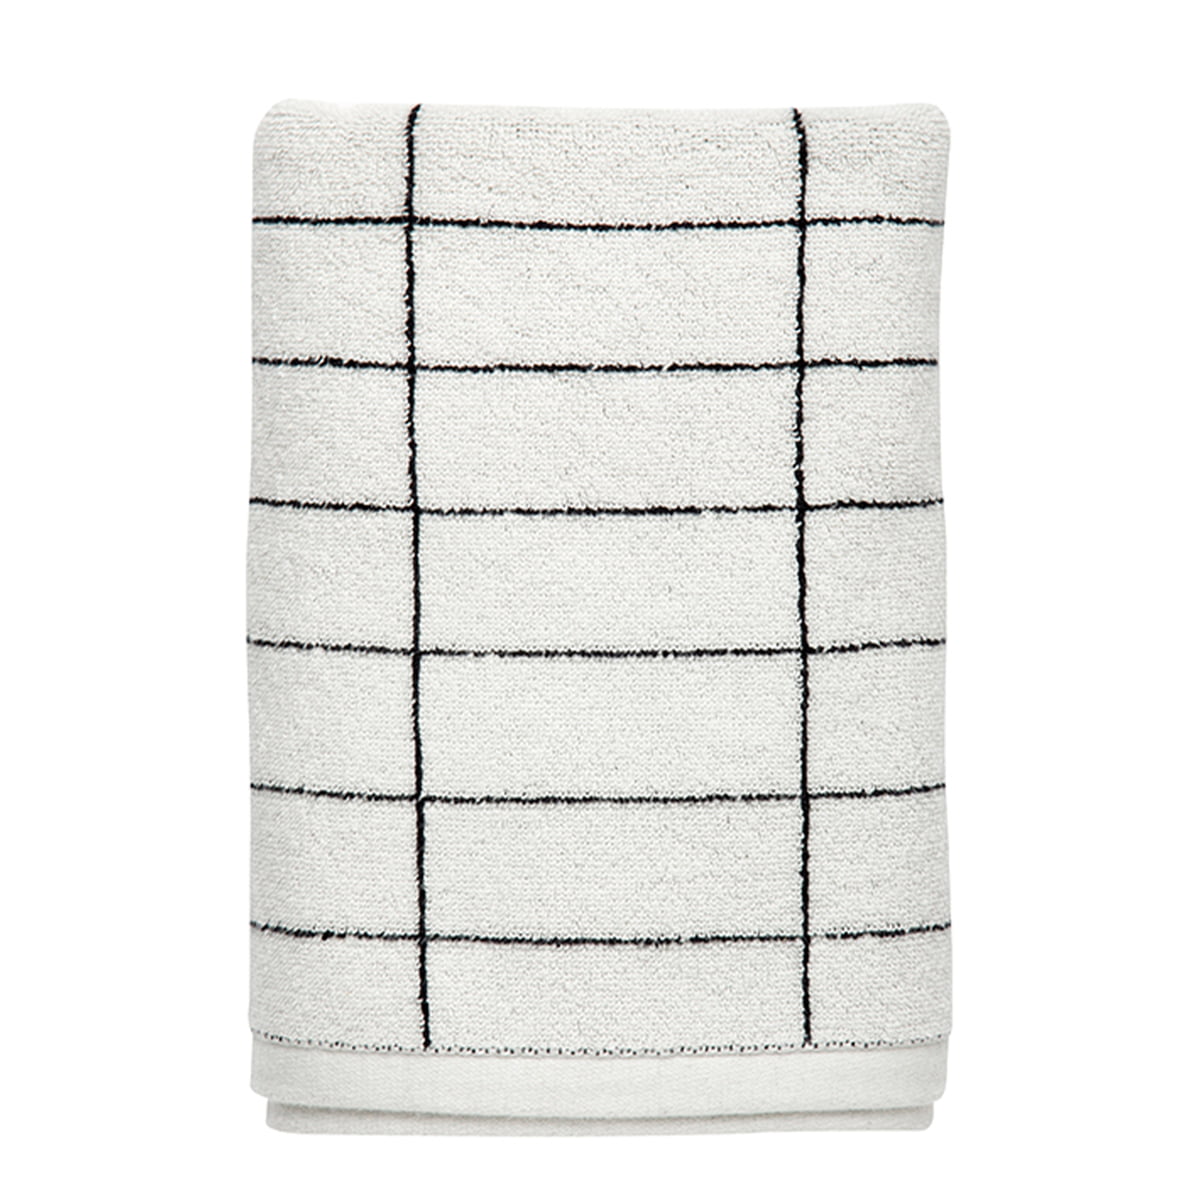 Mette Ditmer - TILE STONE bath towel 70x140 - Black - Hjemme og kjøkken